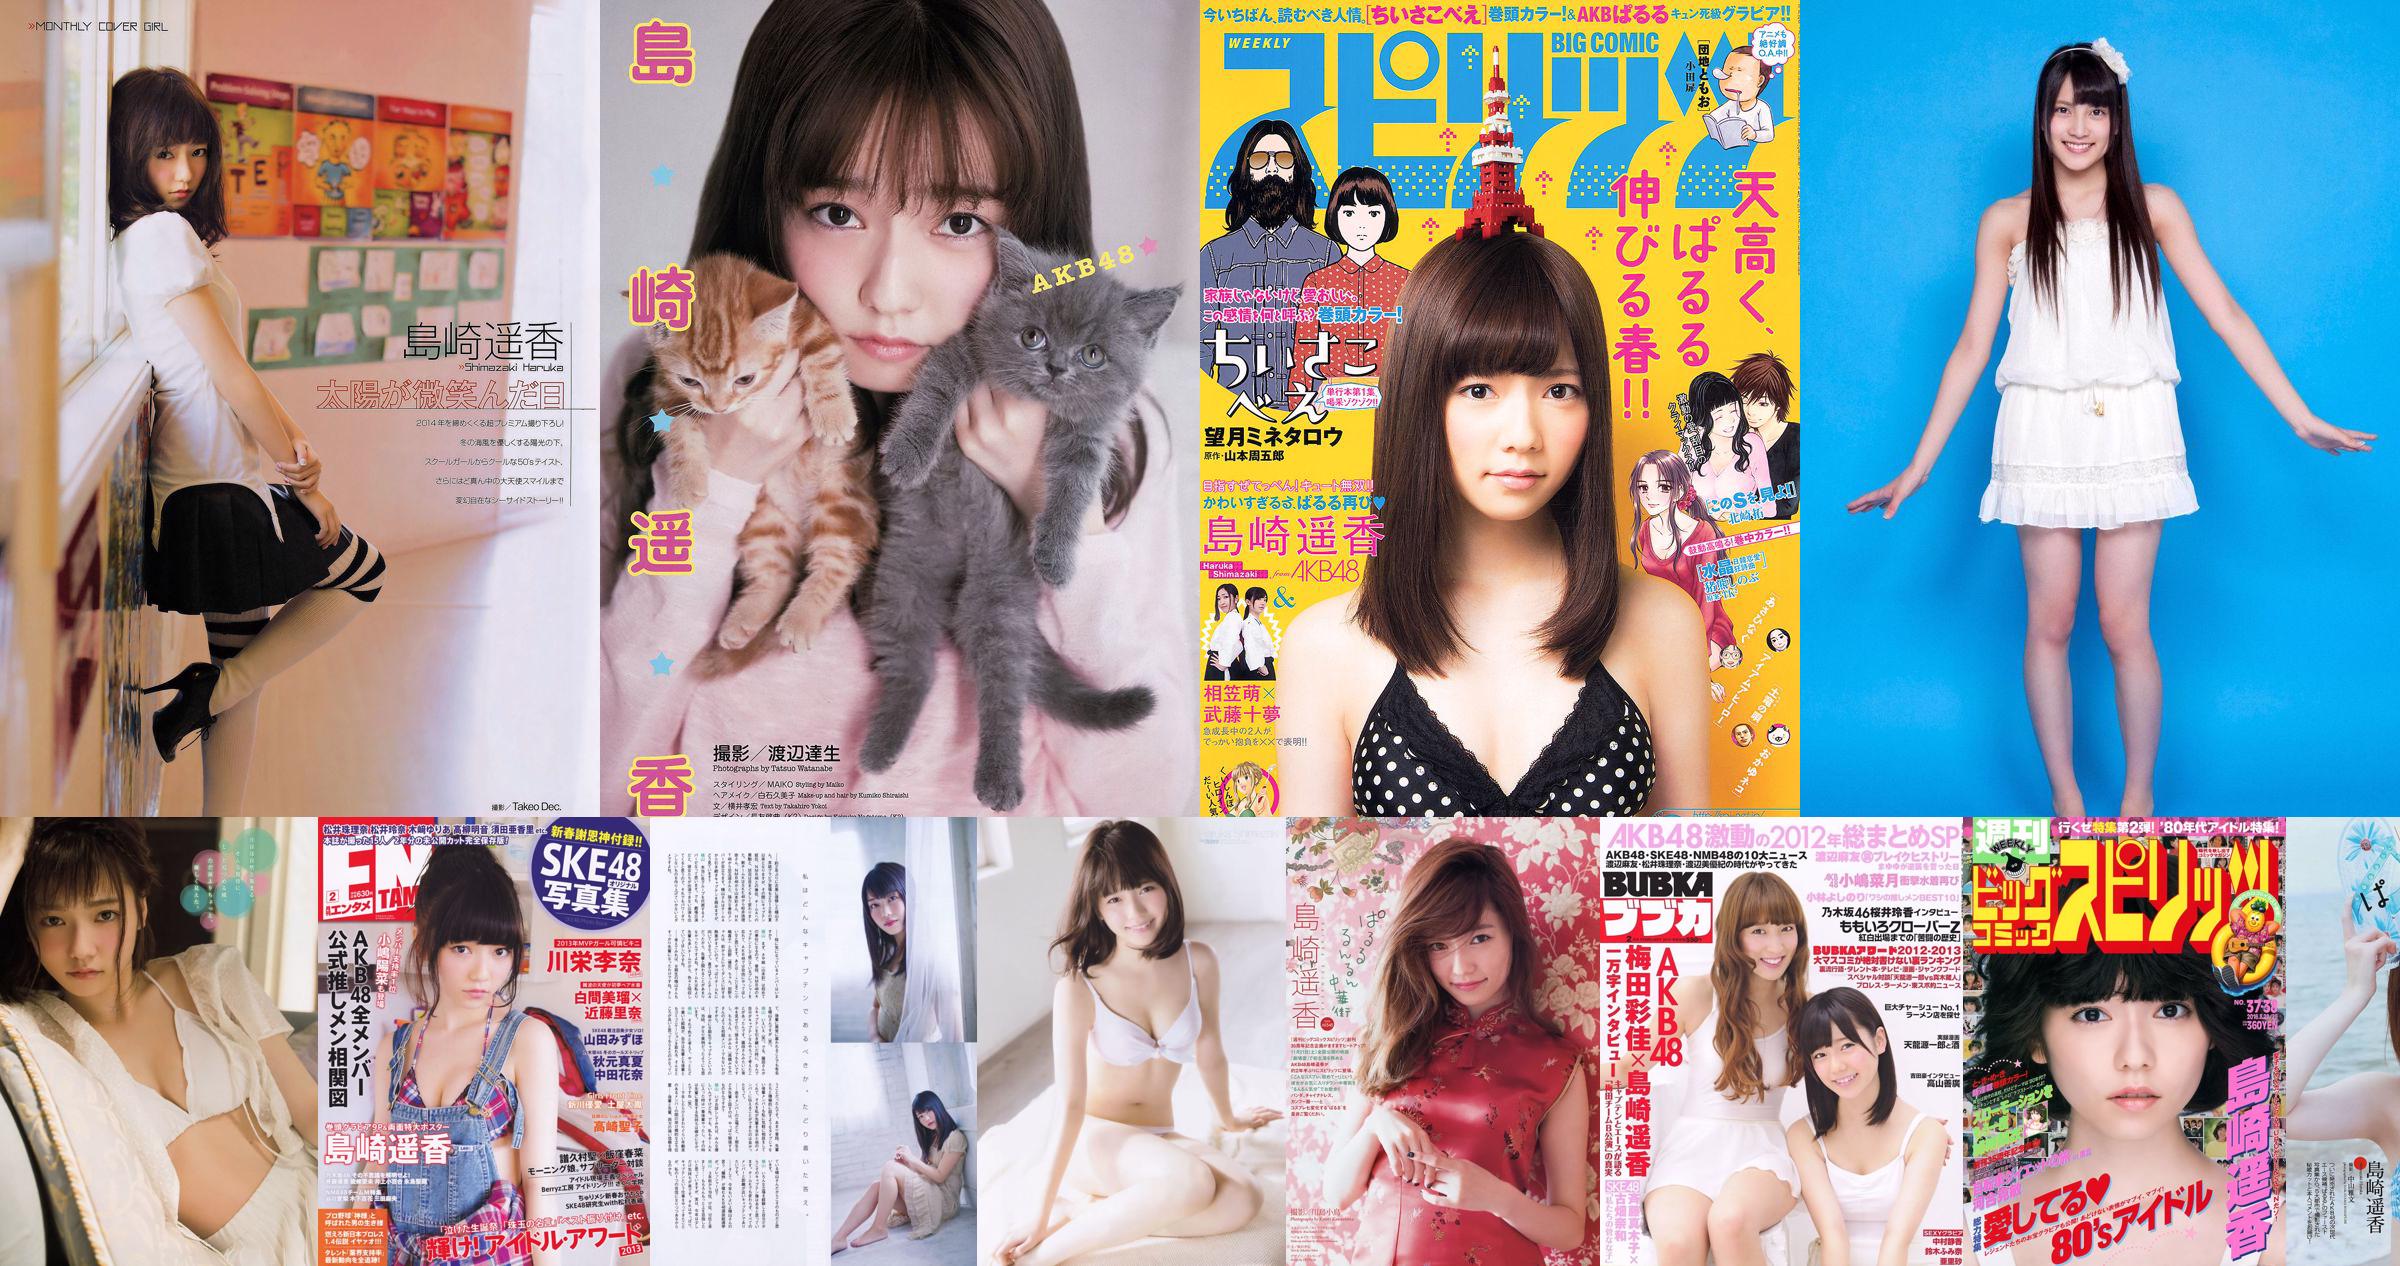 [Revista Young] Haruka Shimazaki 2014 Fotografia No.25 No.77a669 Página 2